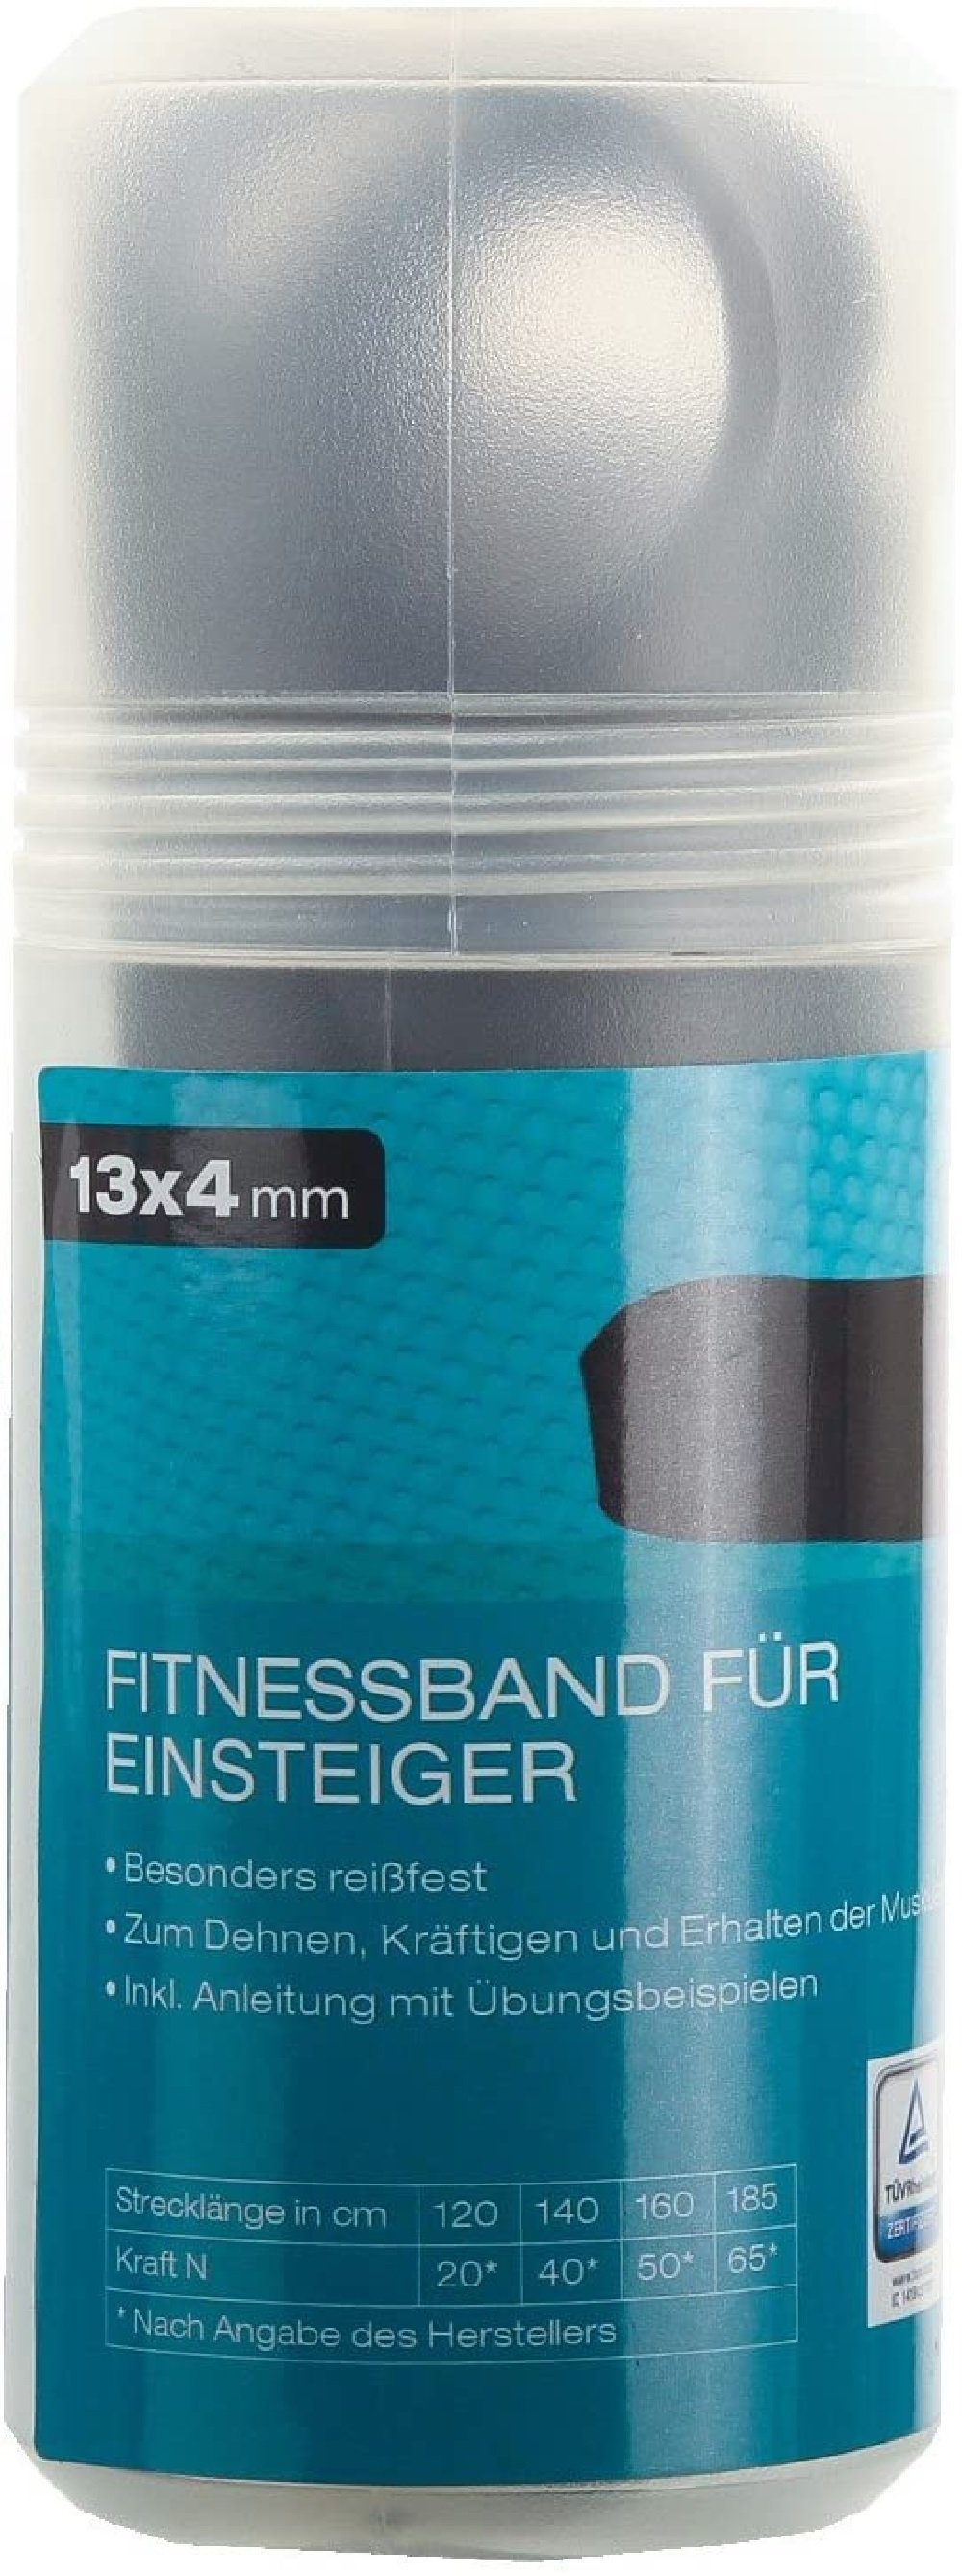 ca. 120-185cm,Farbe:schwarz (13x4mm),dehnbar JOKA international Sport für Fitnessrolle FOR Einsteiger Fitnessband